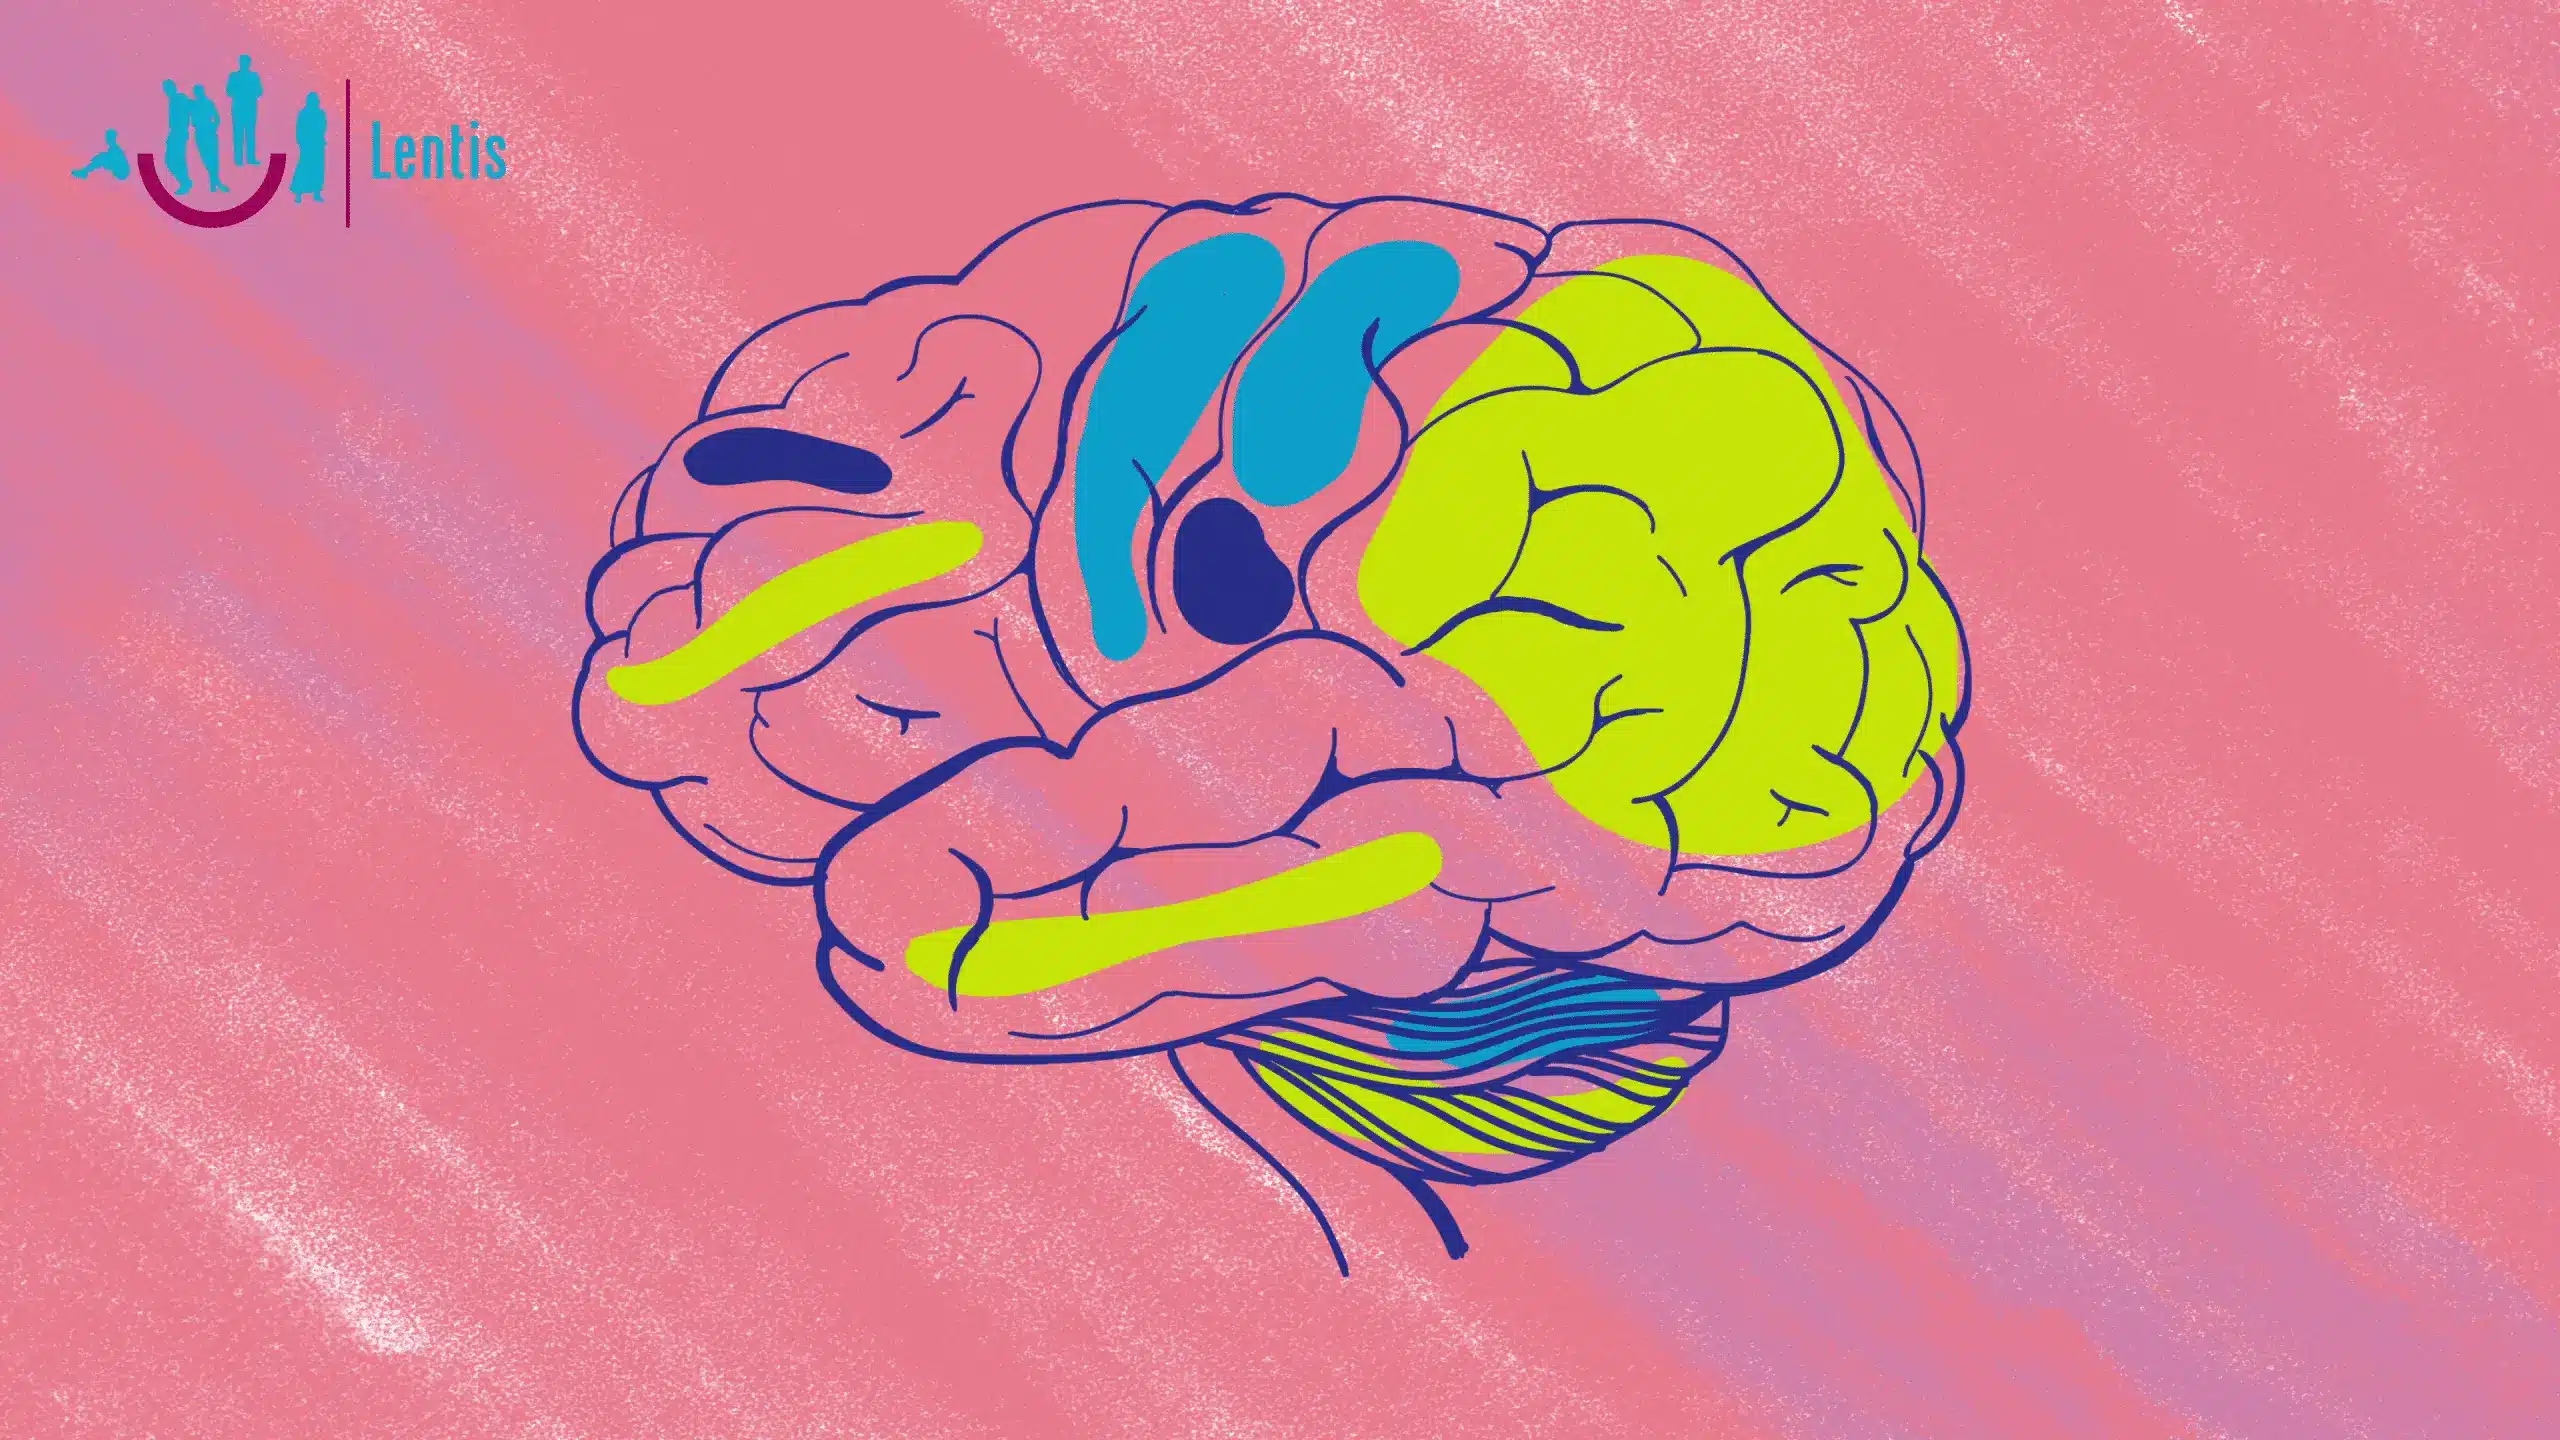 Een tekening van het menselijk brein met daarin gele en blauwe kleurvlakken op een roze achtergrond